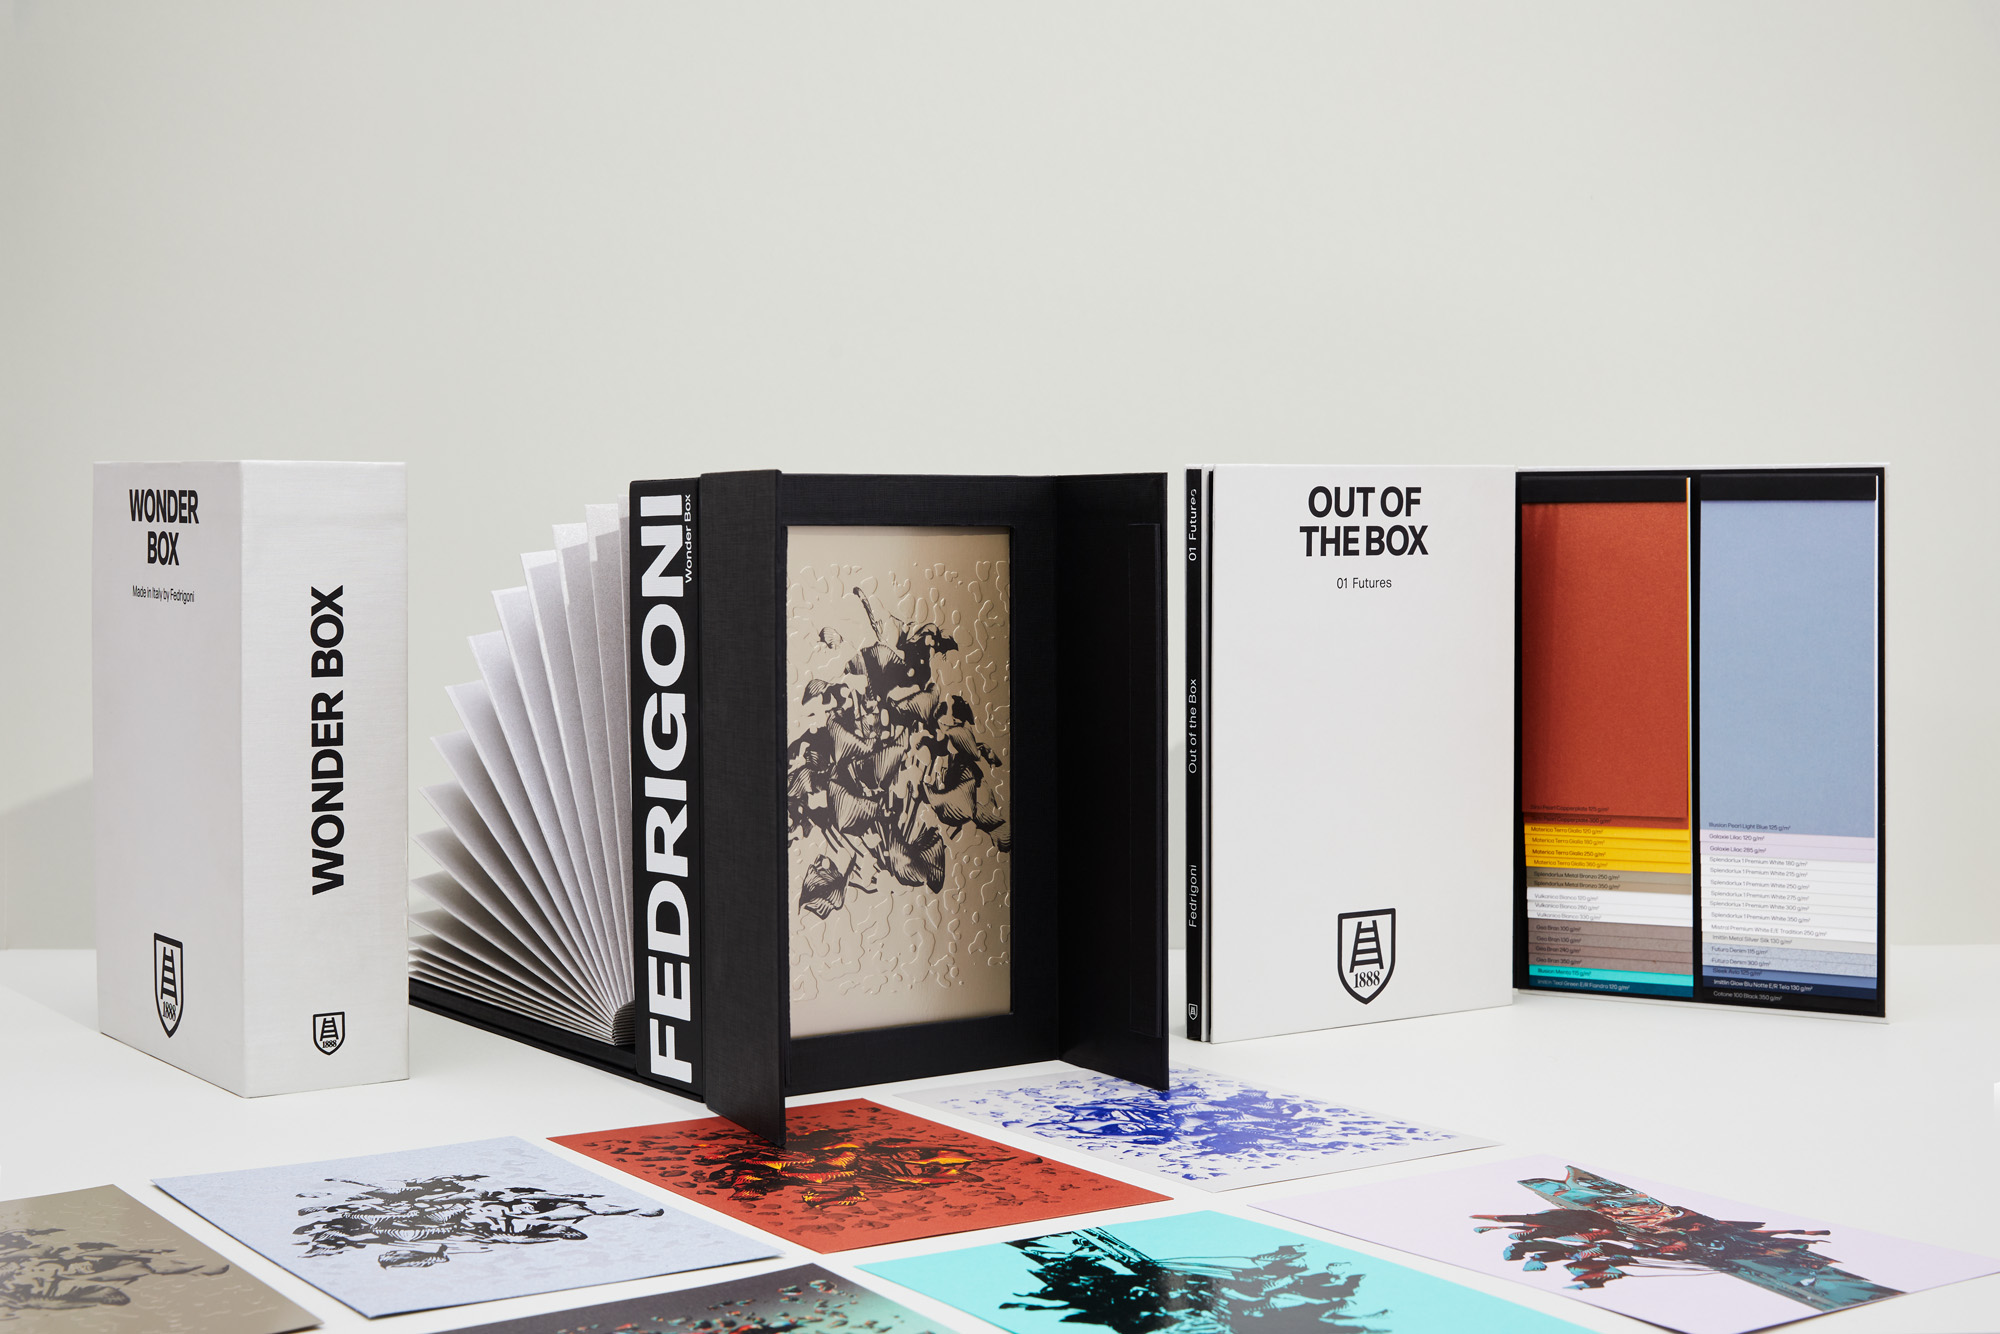 Découvrez Futures, une collection de papiers présentée dans la Wonder Box et Out of the Box.